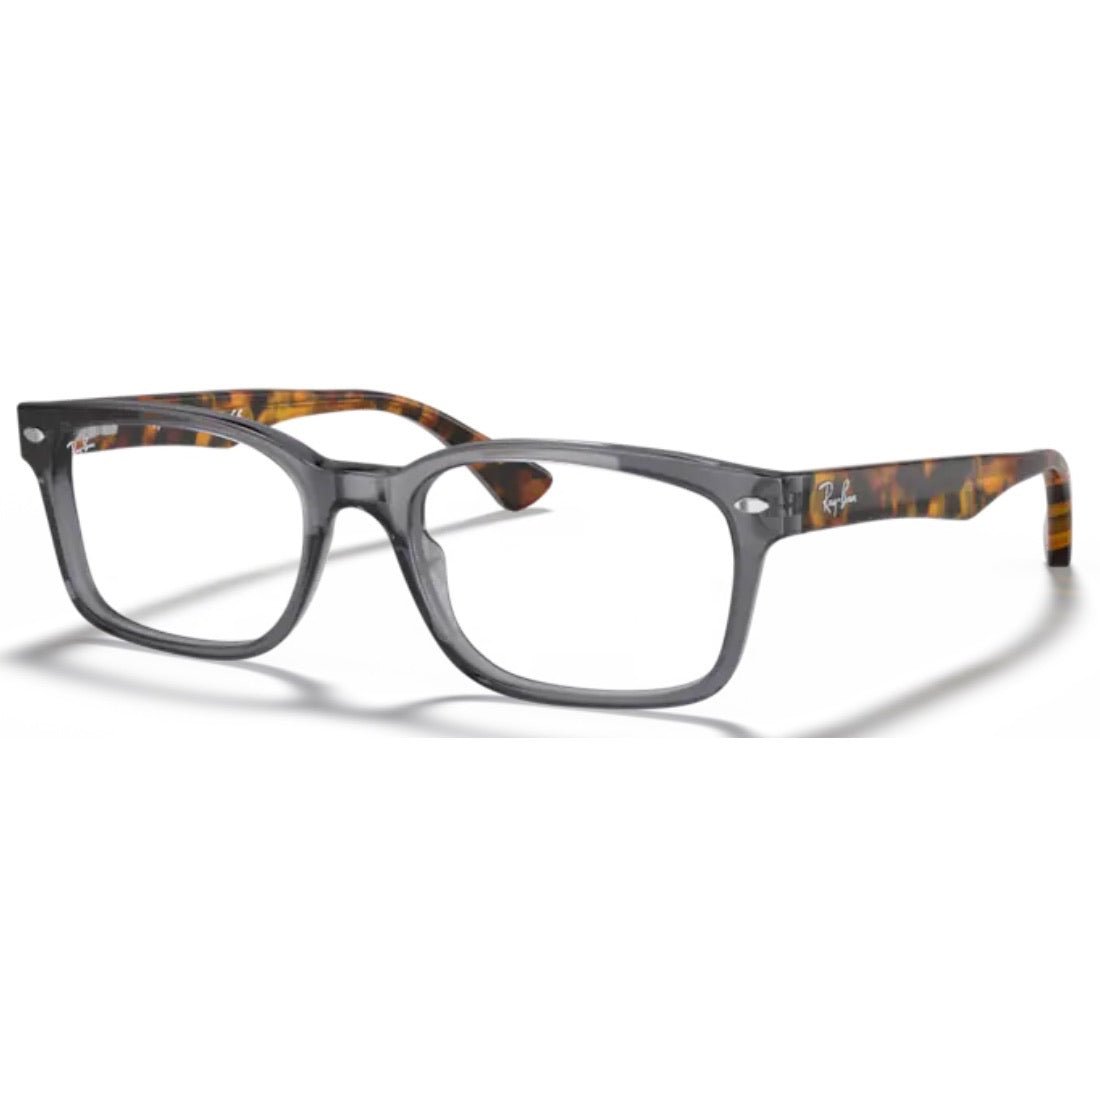 Get Ray-Ban Eyeglasses & Frames Available at Paris Optical